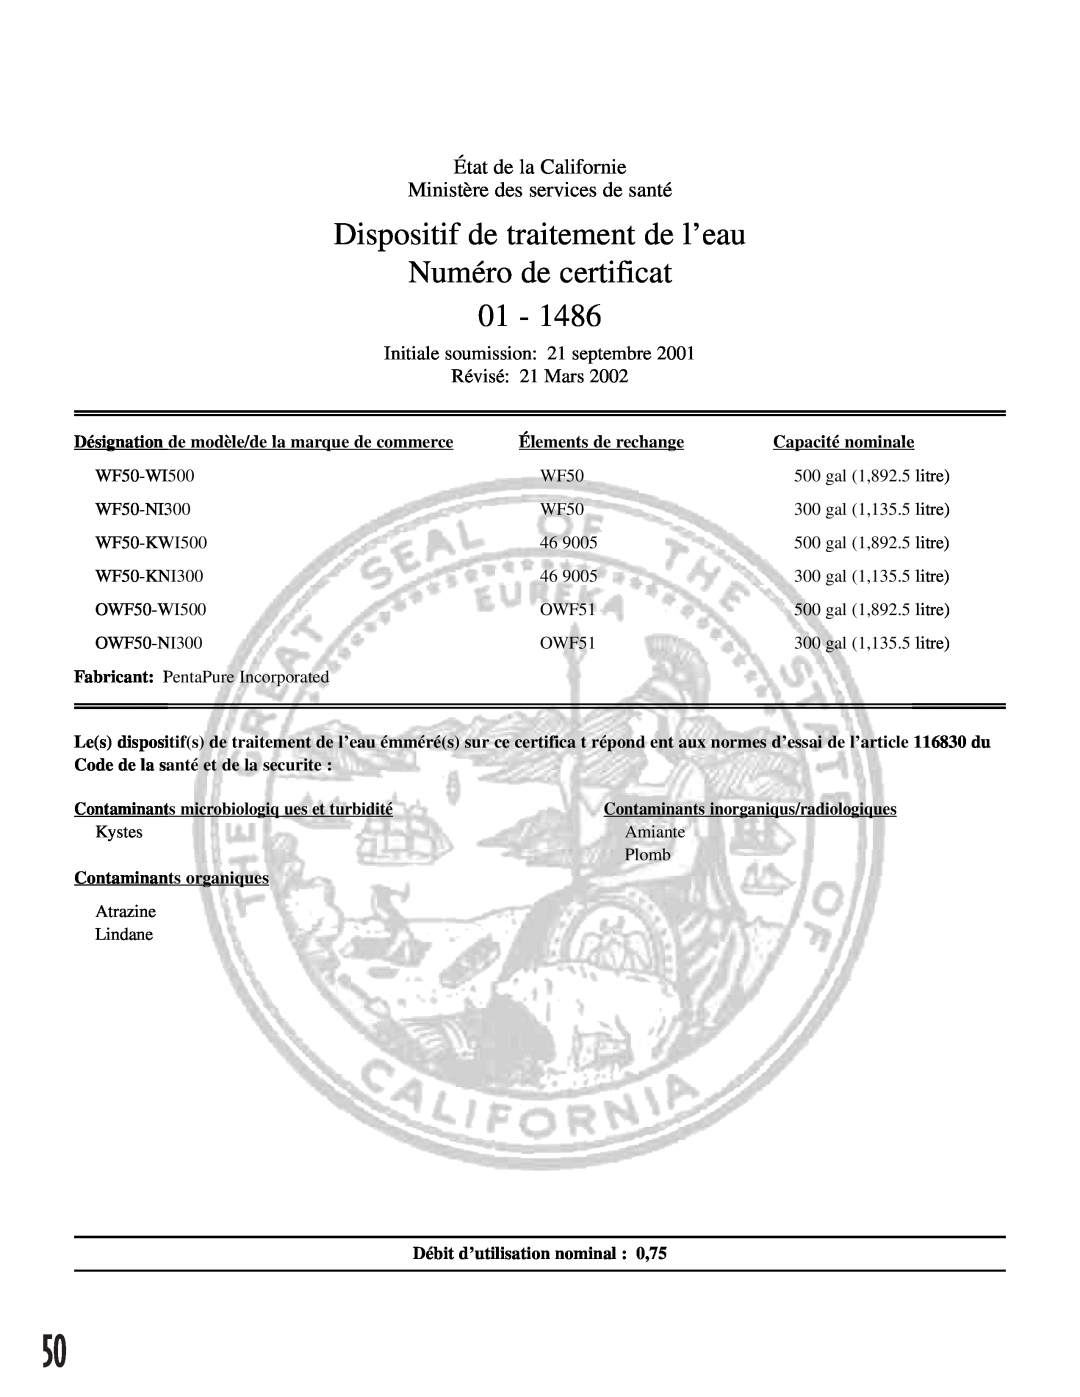 Maytag ARB2557CC, ARB2557CSL, ARB2257CSR Dispositif de traitement de l’eau, Numéro de certificat 01, État de la Californie 